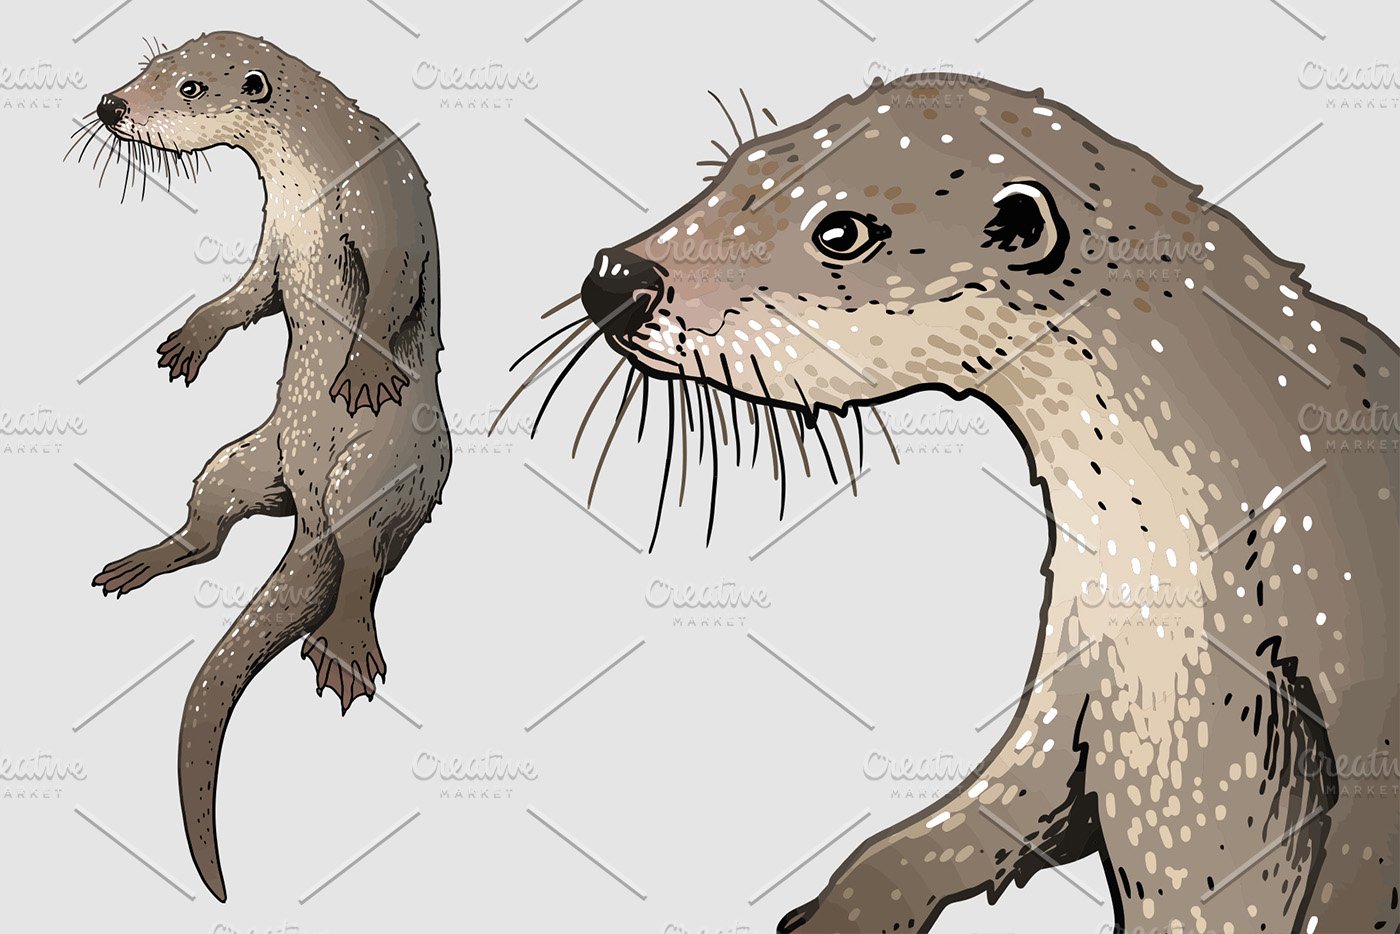 European otter illustration cover image.